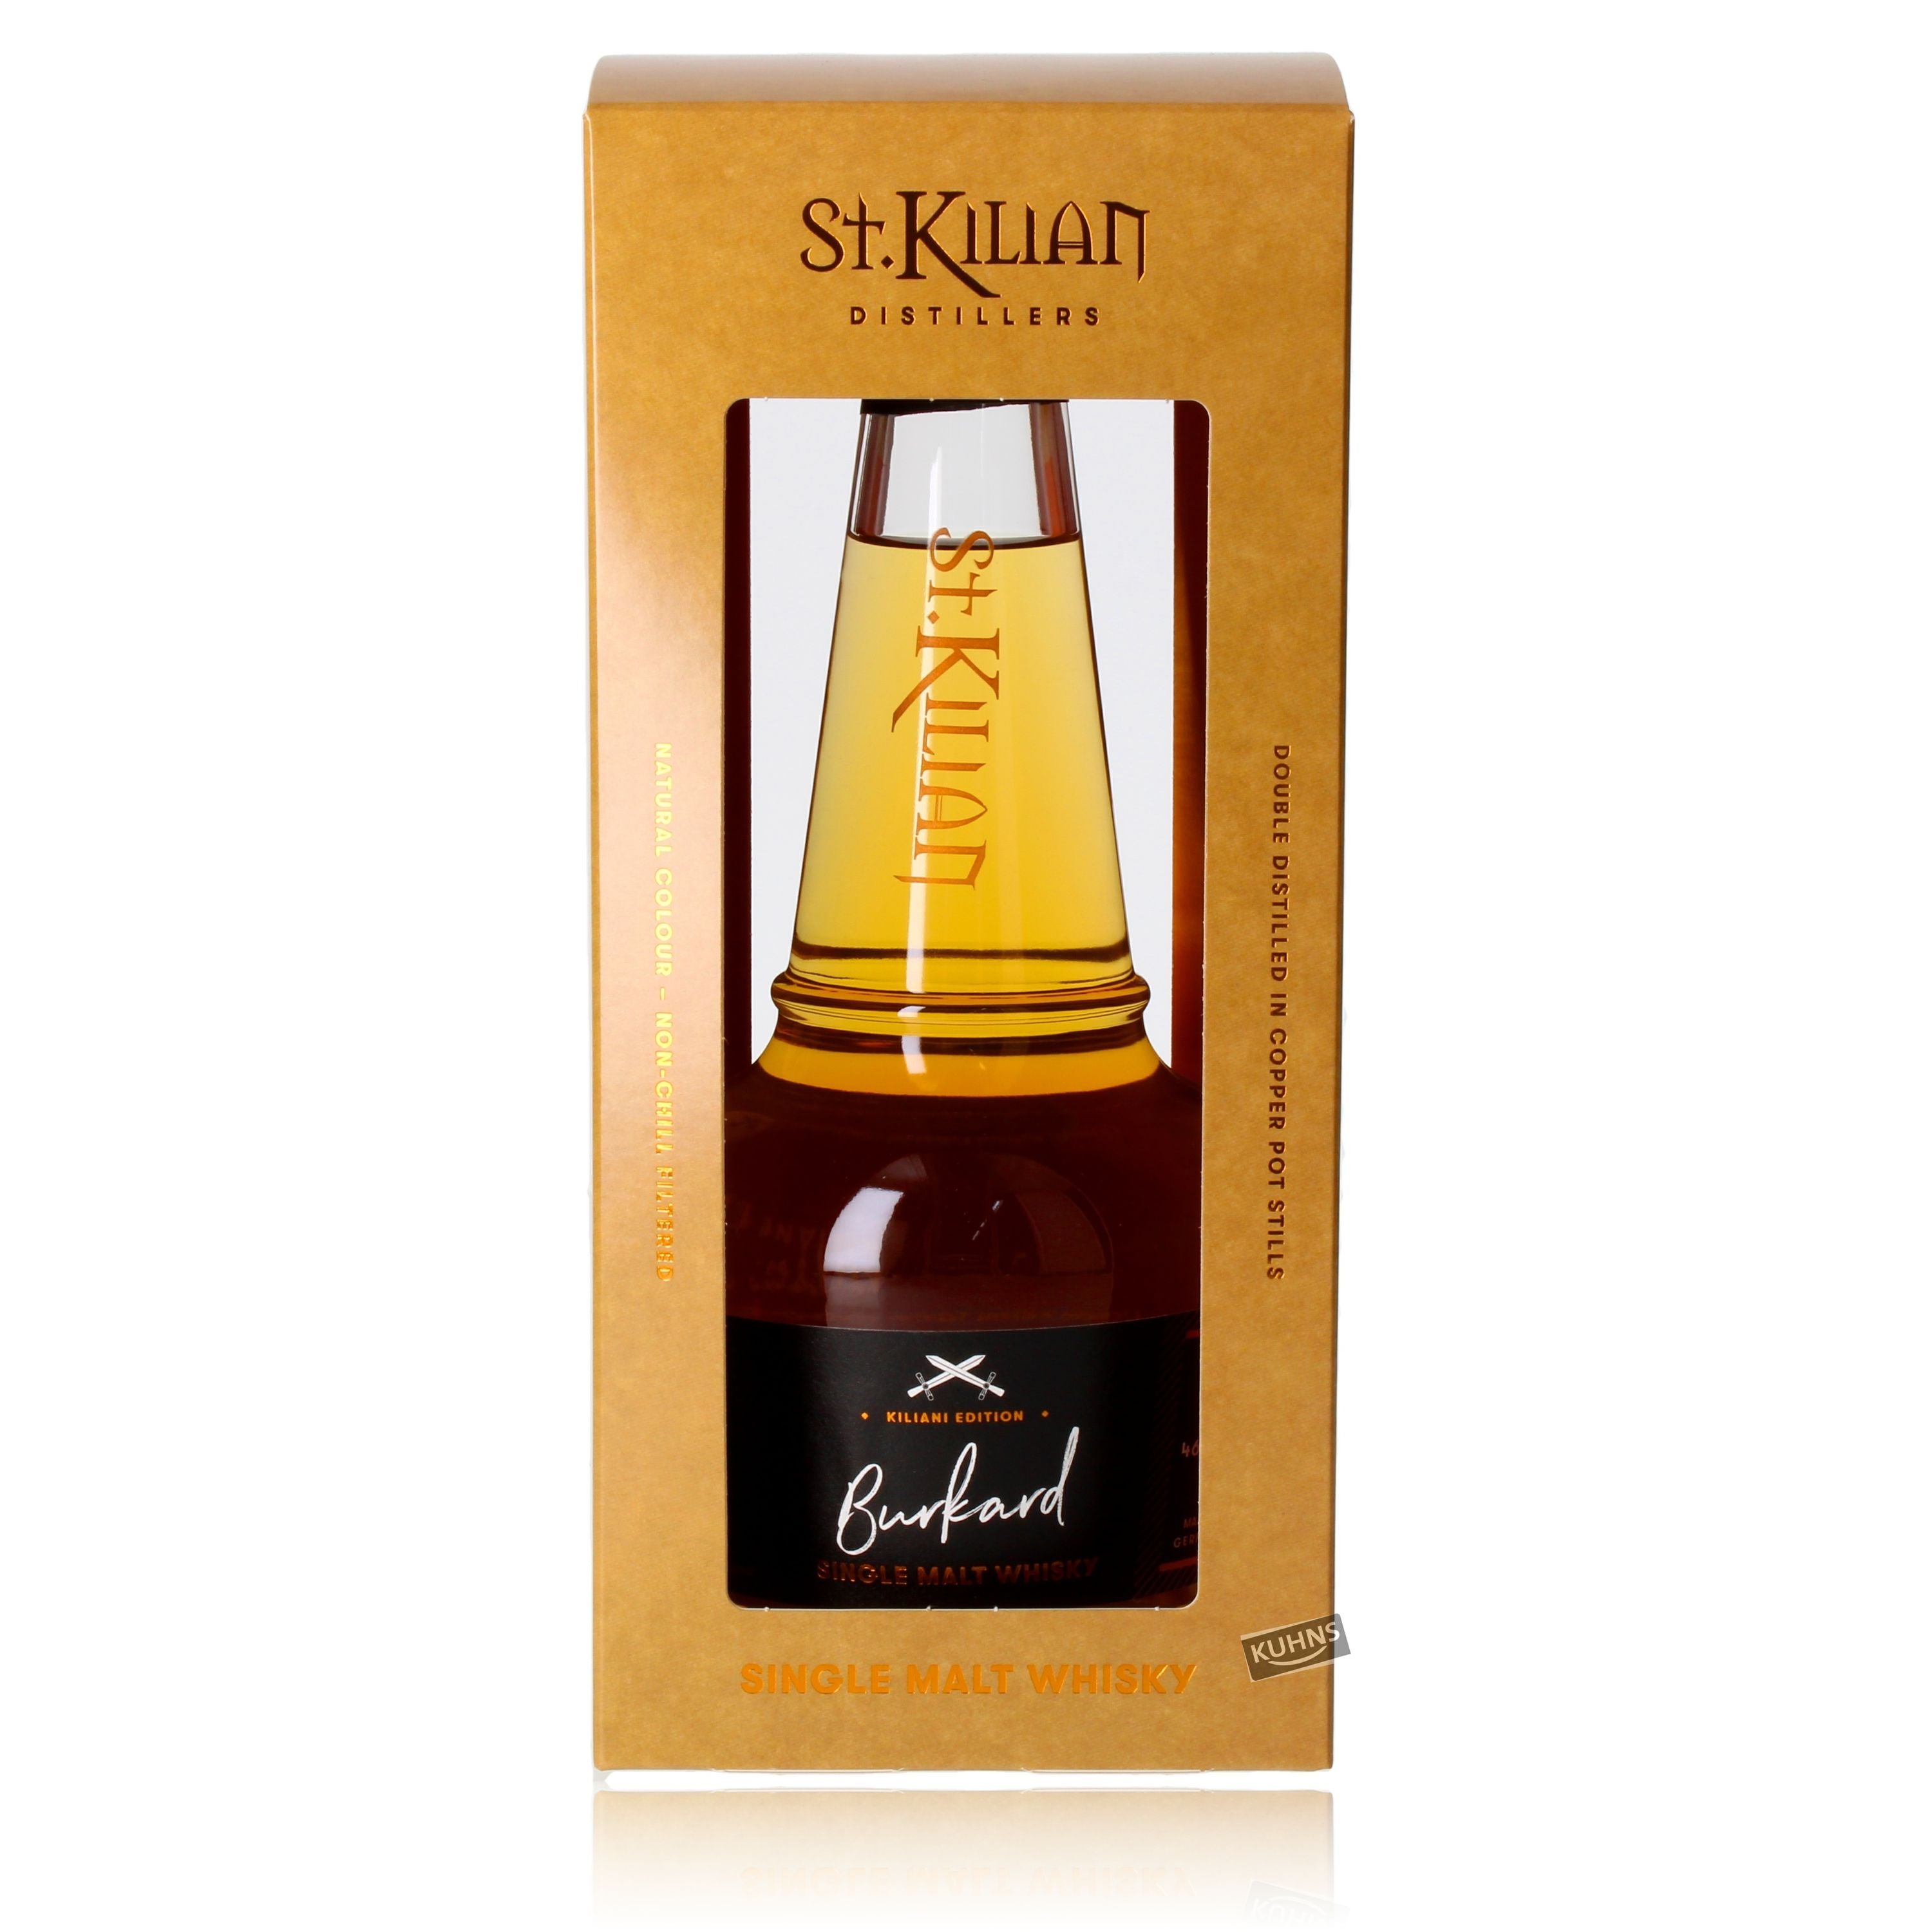 St. Kilian Kiliani Edition – Burkard Single Malt Whisky 0,5l, alc. 46 Vol.-%